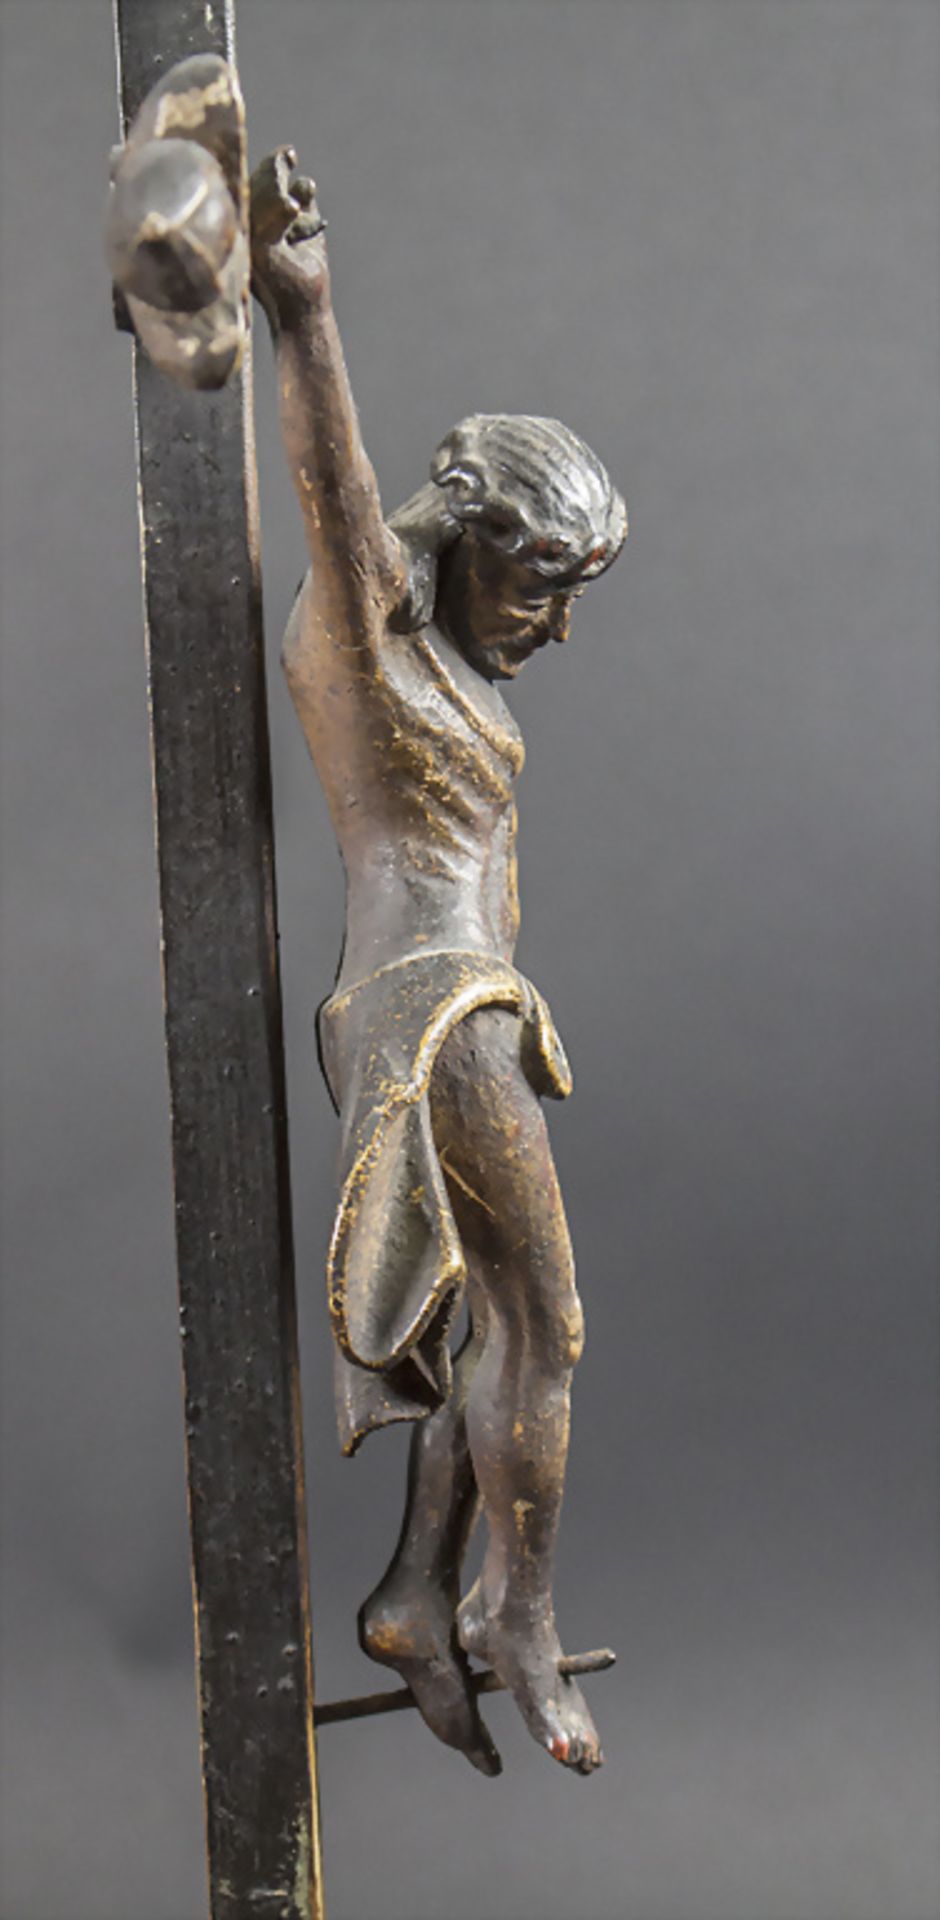 Barockes Standkreuz Kruzifix / A Baroque wooden standing cross crucifix, 18. Jh. - Bild 4 aus 6